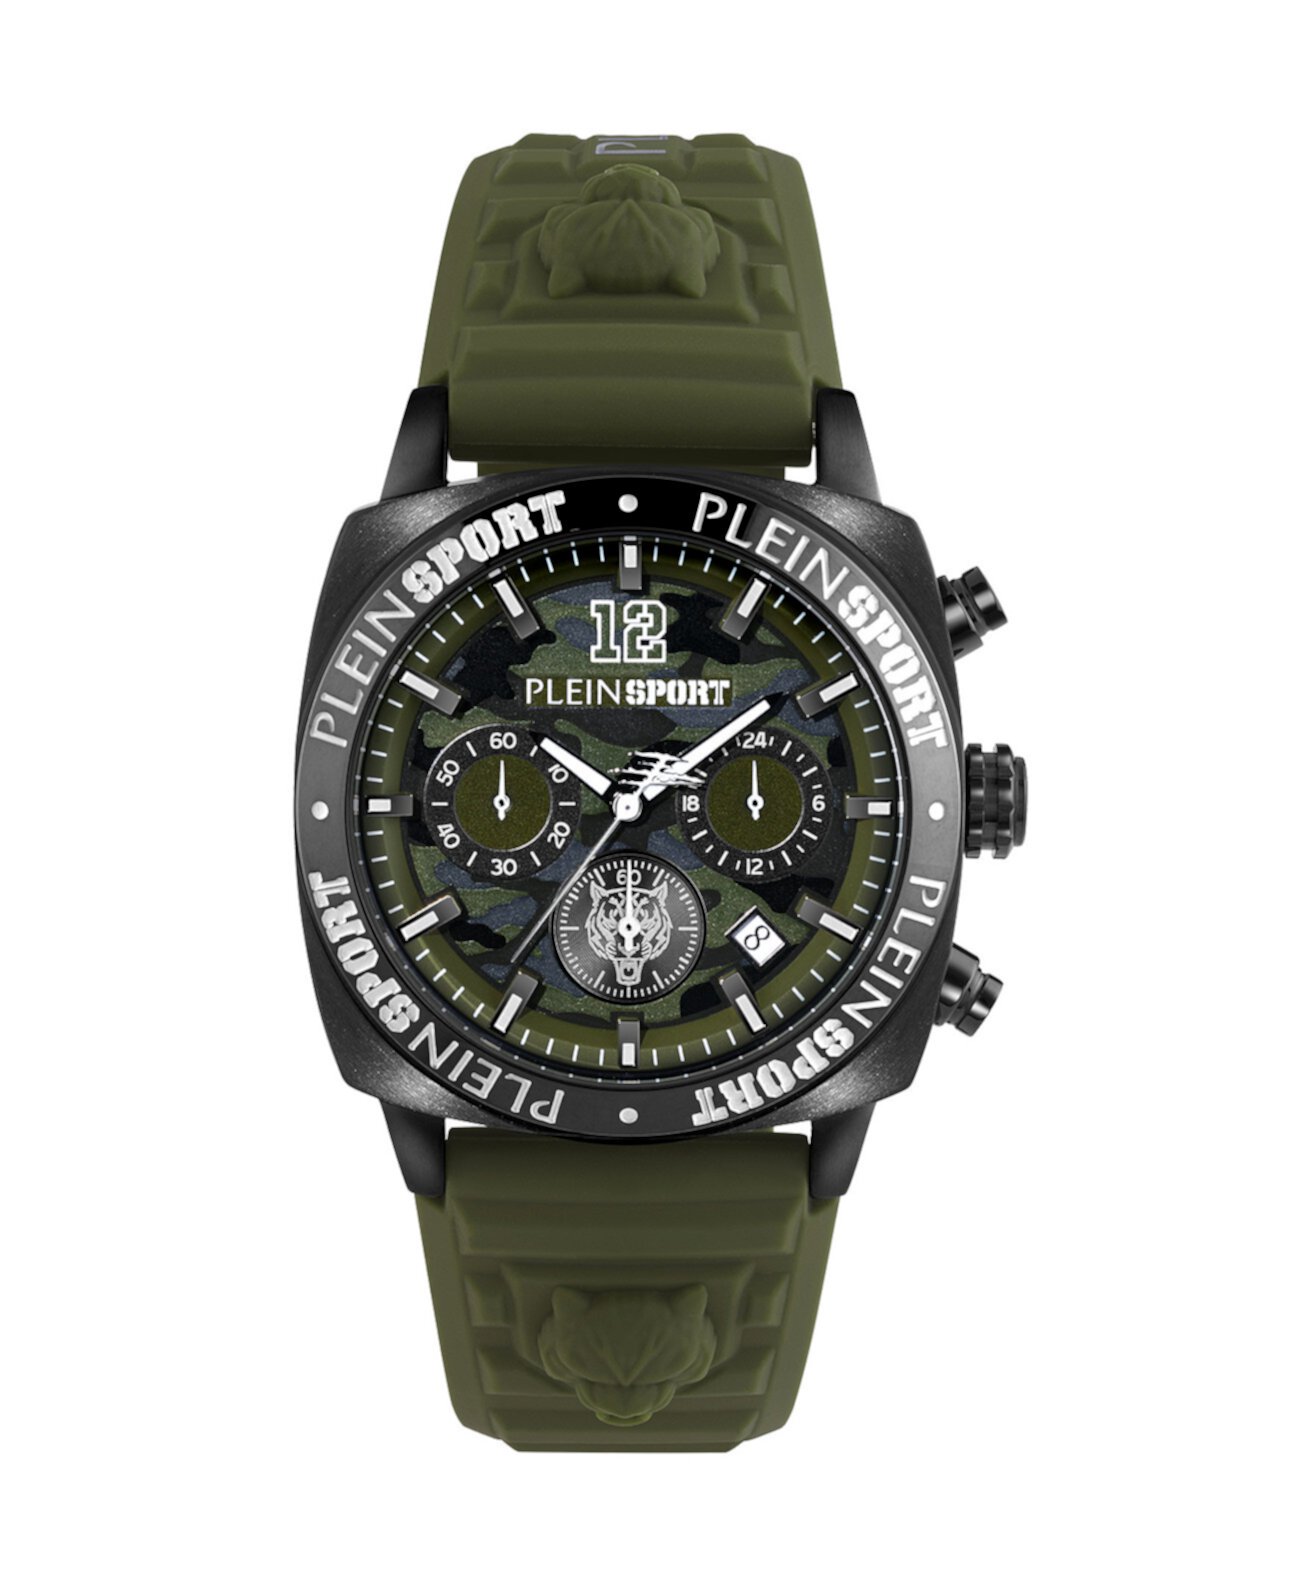 Мужские часы Wildcat с зеленым силиконовым ремешком, 40 мм Plein Sport